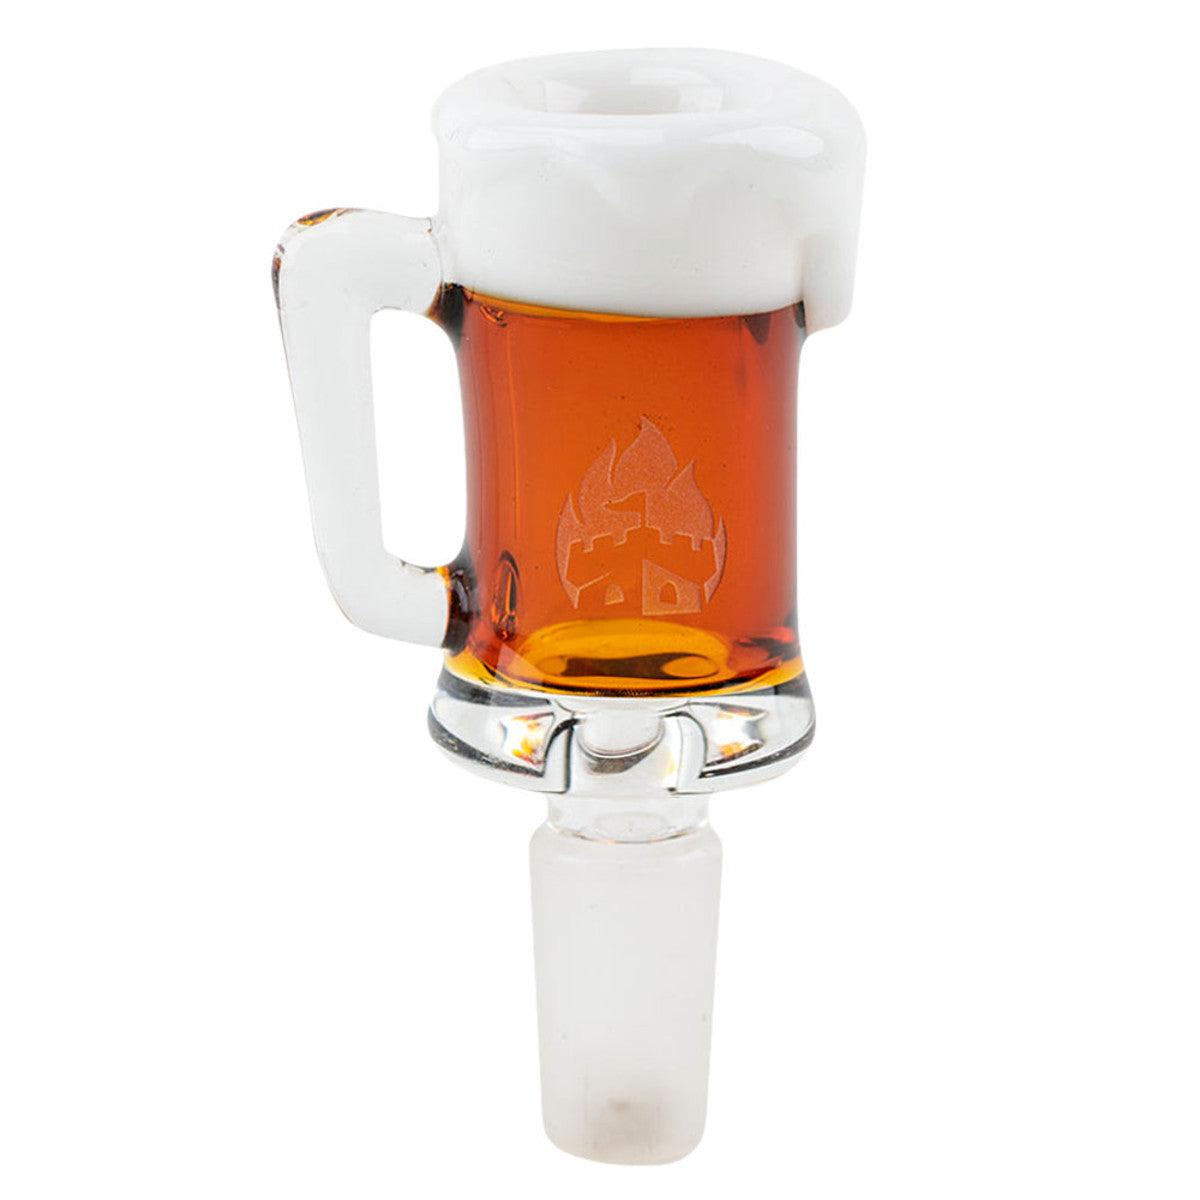 Copy of Empire Glassworks Bowl Piece - Beer Mug Design